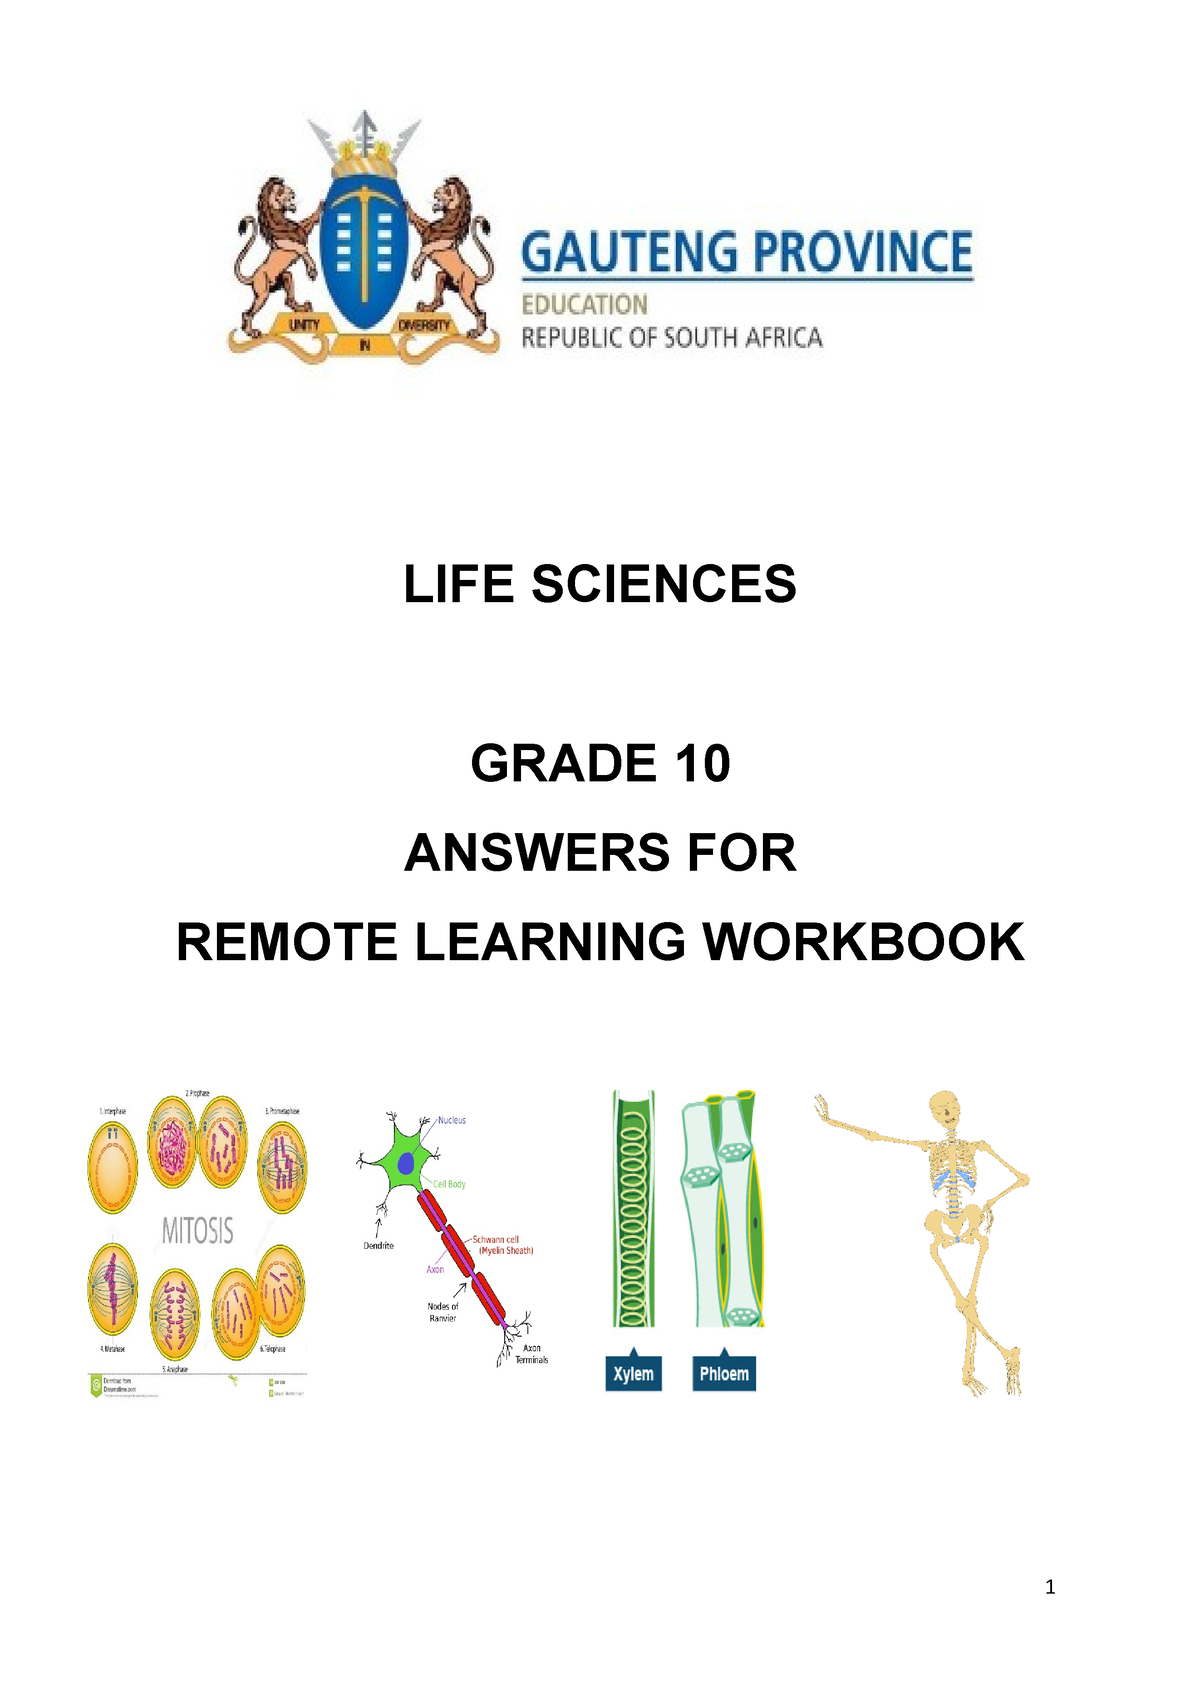 grade 10 life science assignment term 2 memorandum